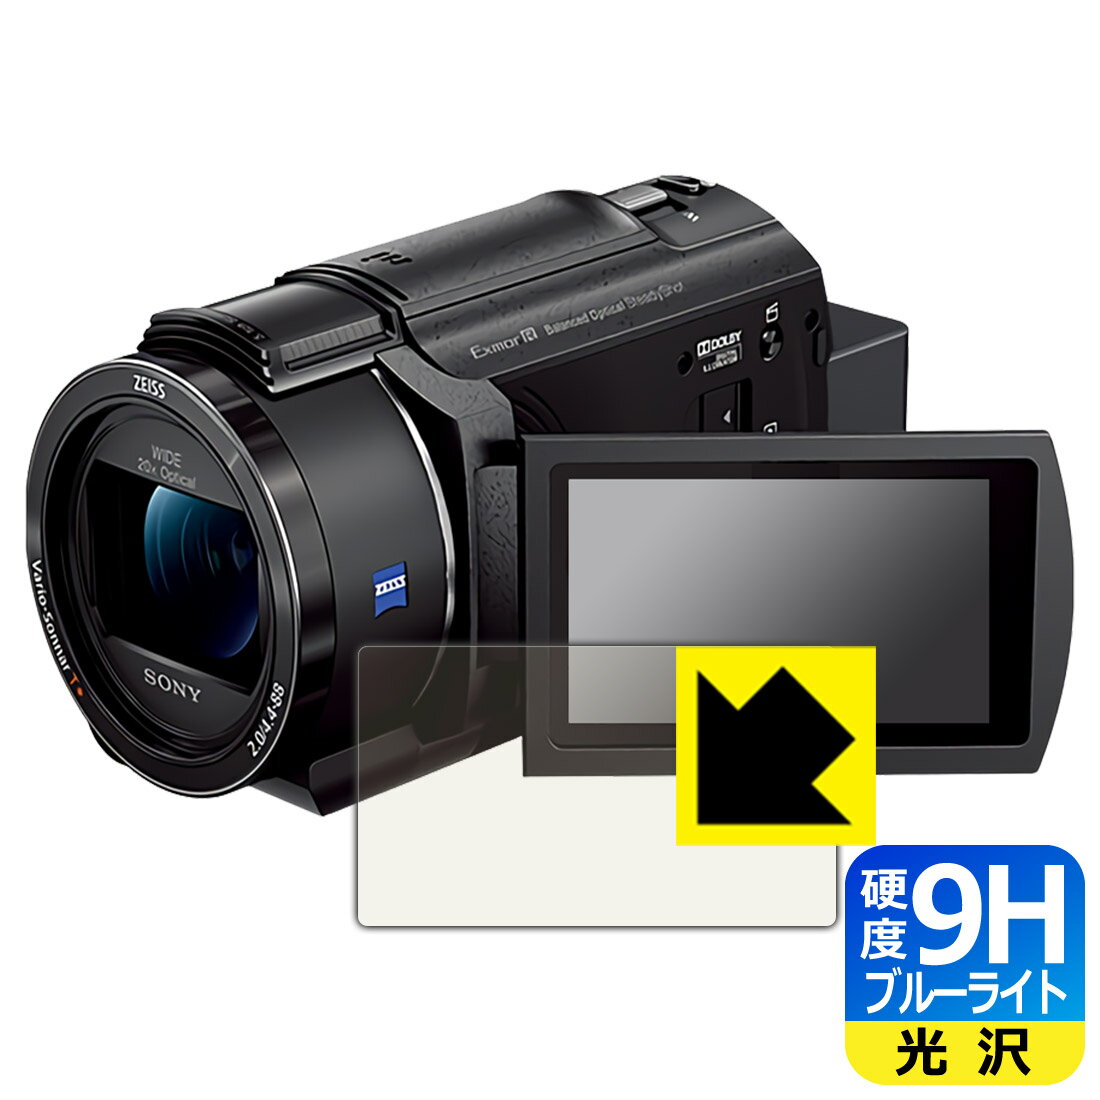 9H高硬度【ブルーライトカット】保護フィルム デジタル4Kビデオカメラレコーダー FDR-AX45A 日本製 自社製造直販